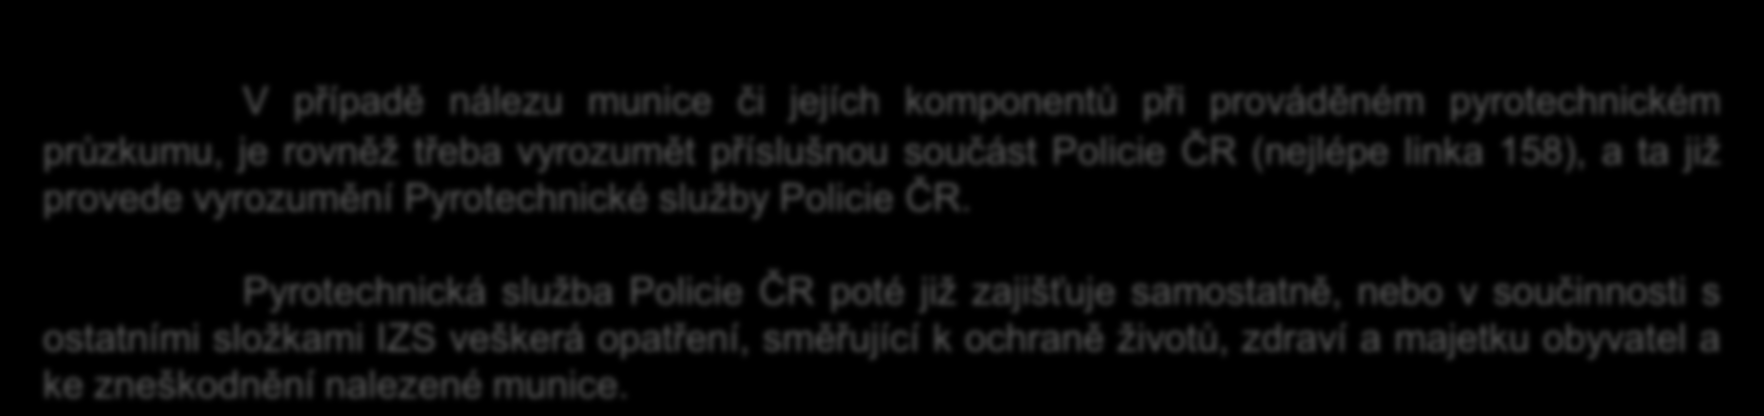 Policie ČR.